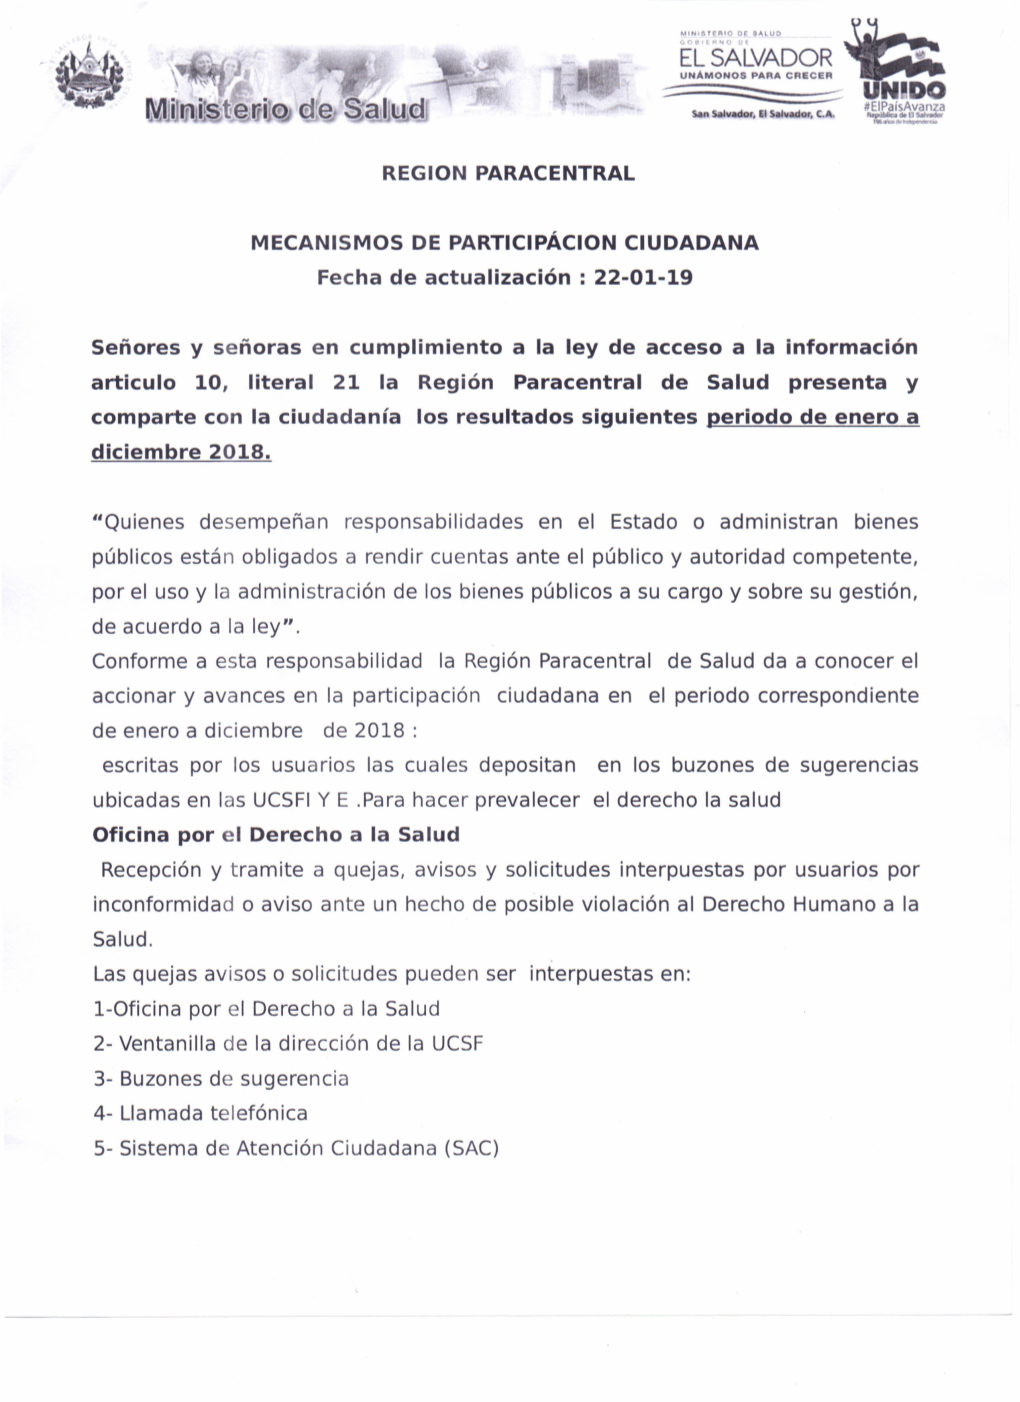 Participación Ciudadana a Enero 2019